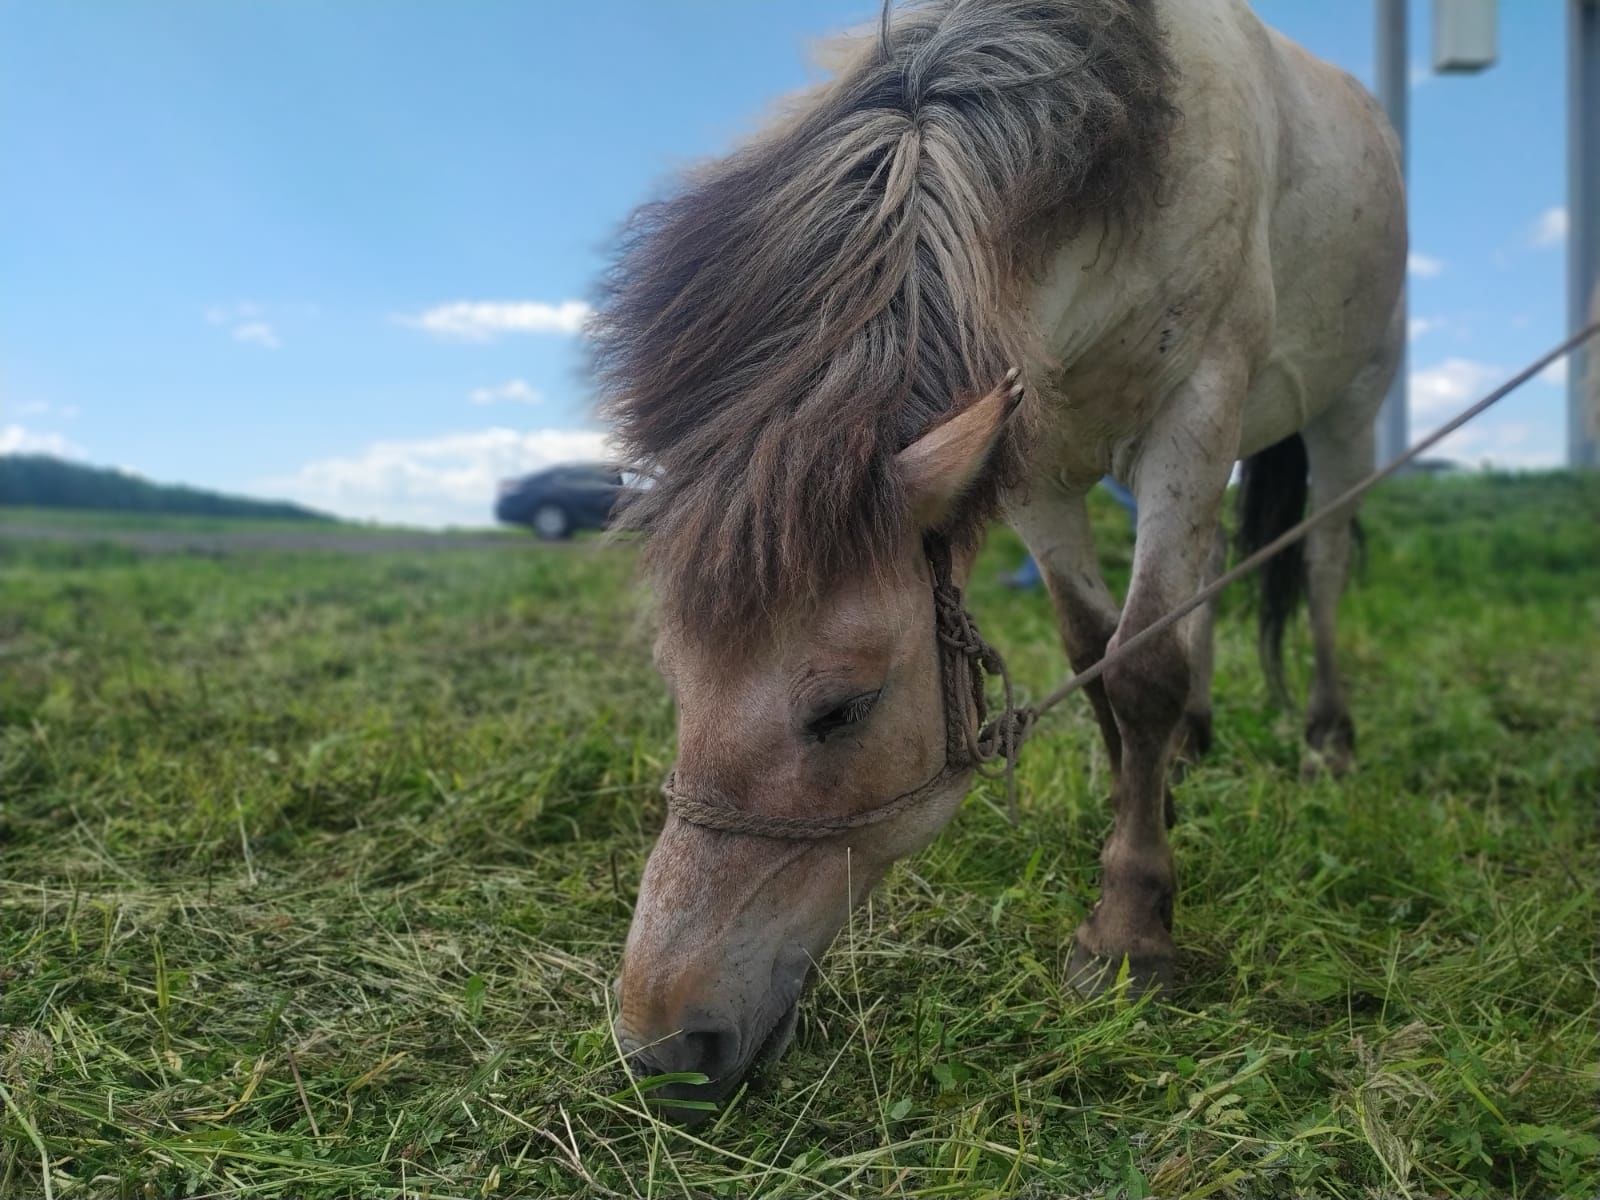 Верхом на коне: как житель якутского села путешествует по стране